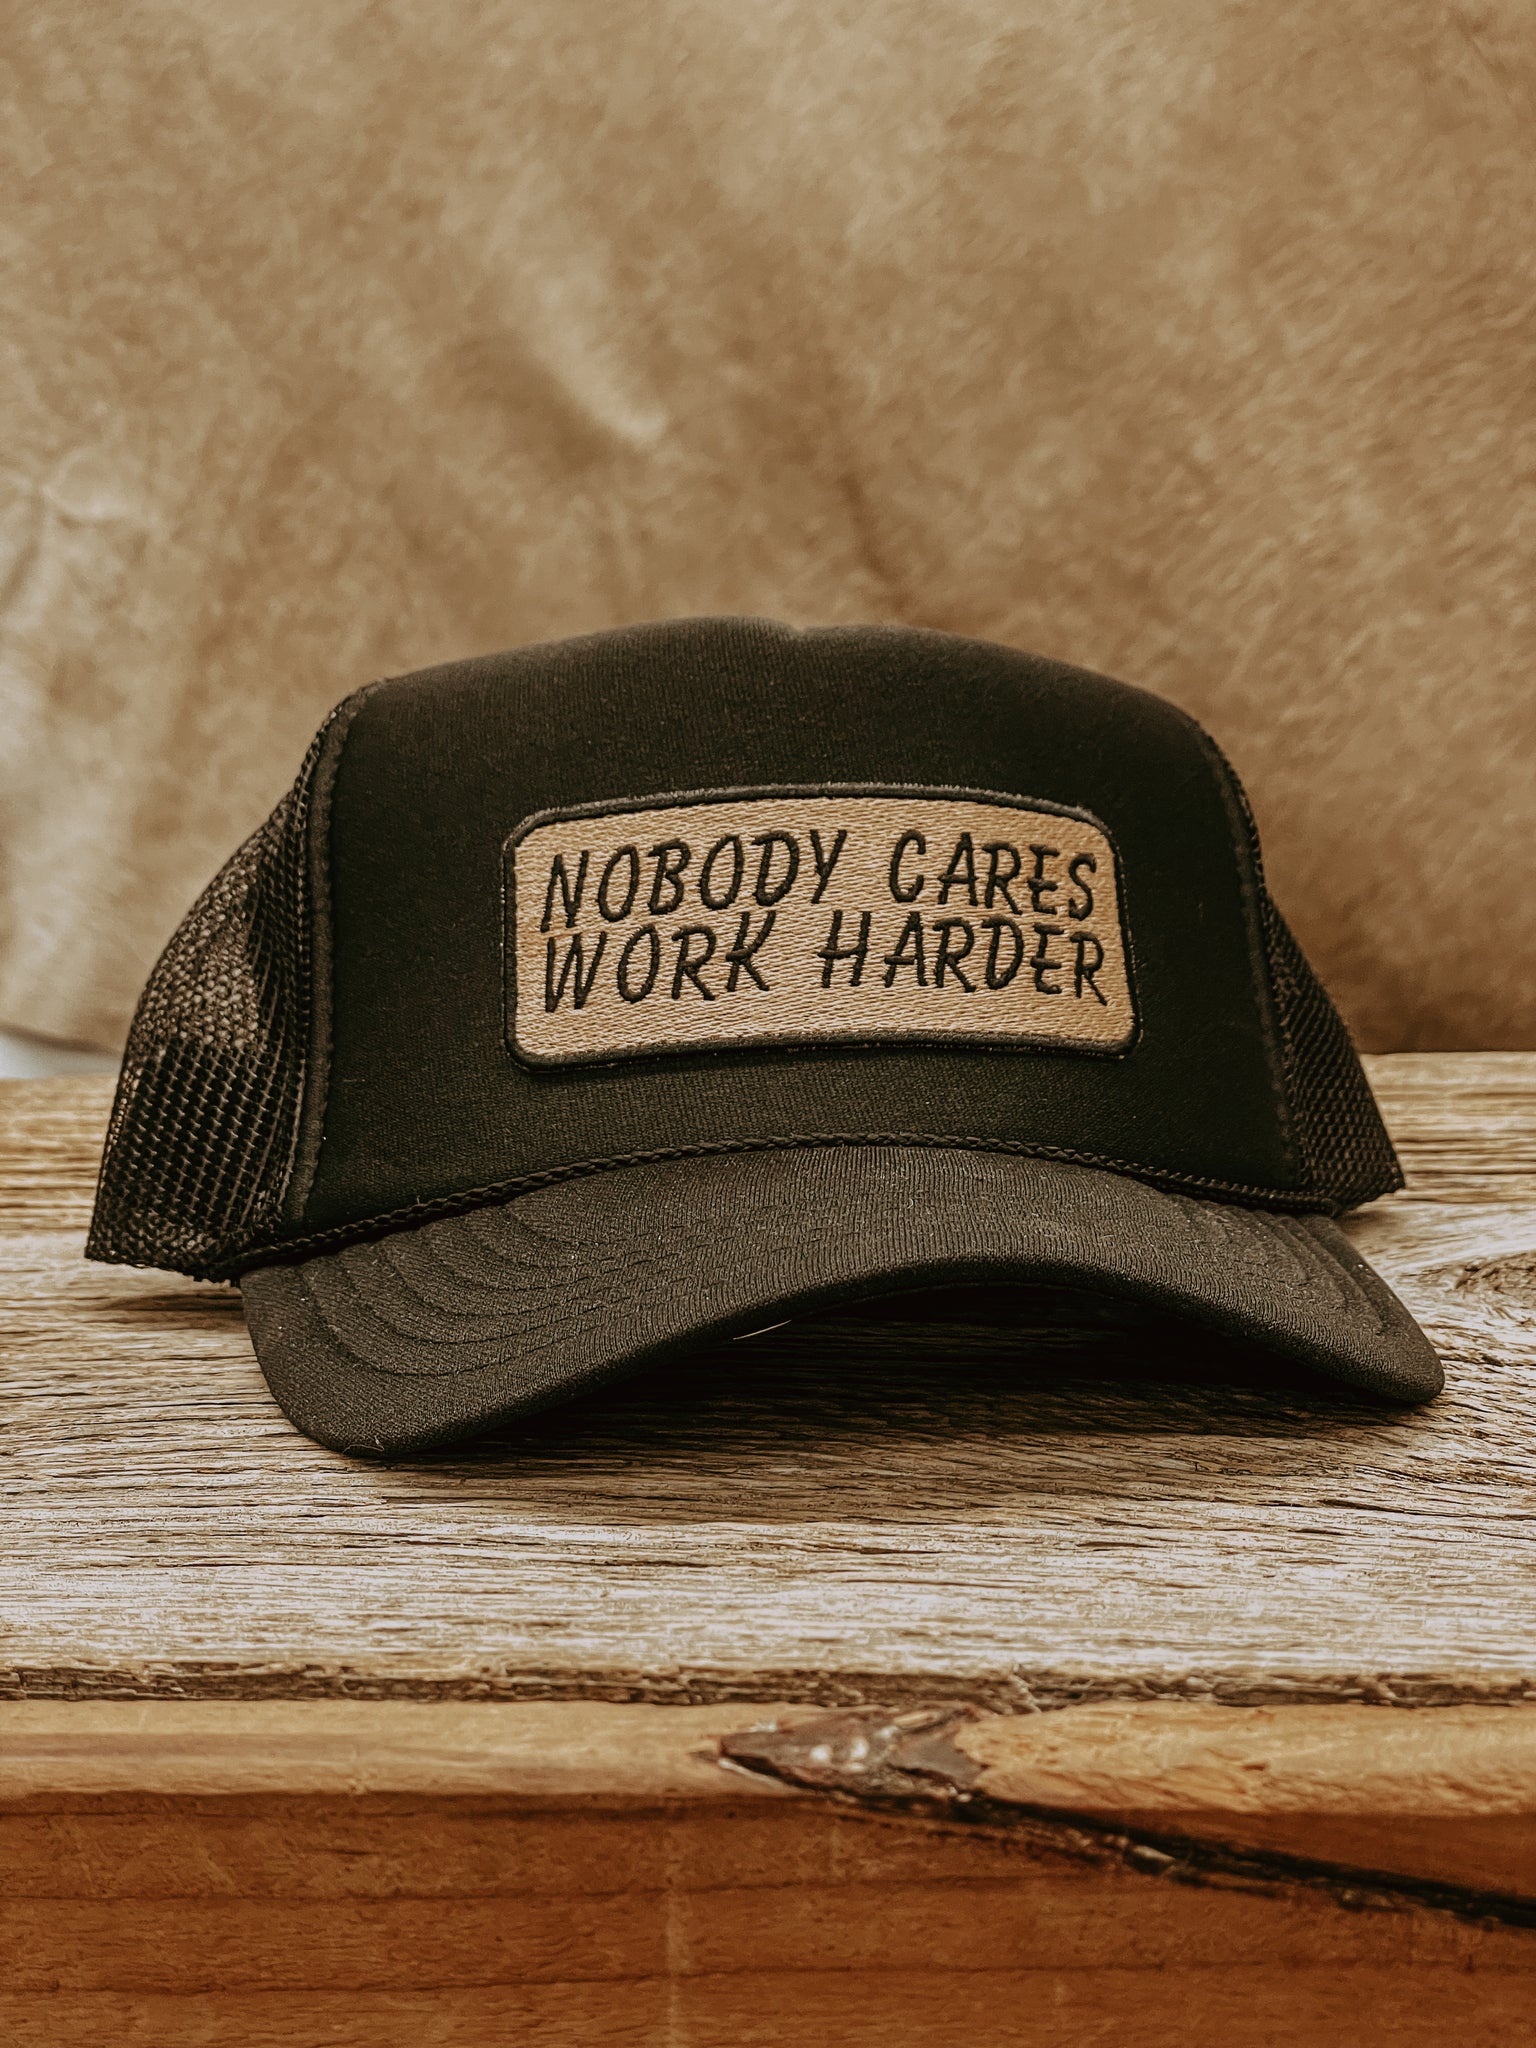 Work Harder Trucker Cap